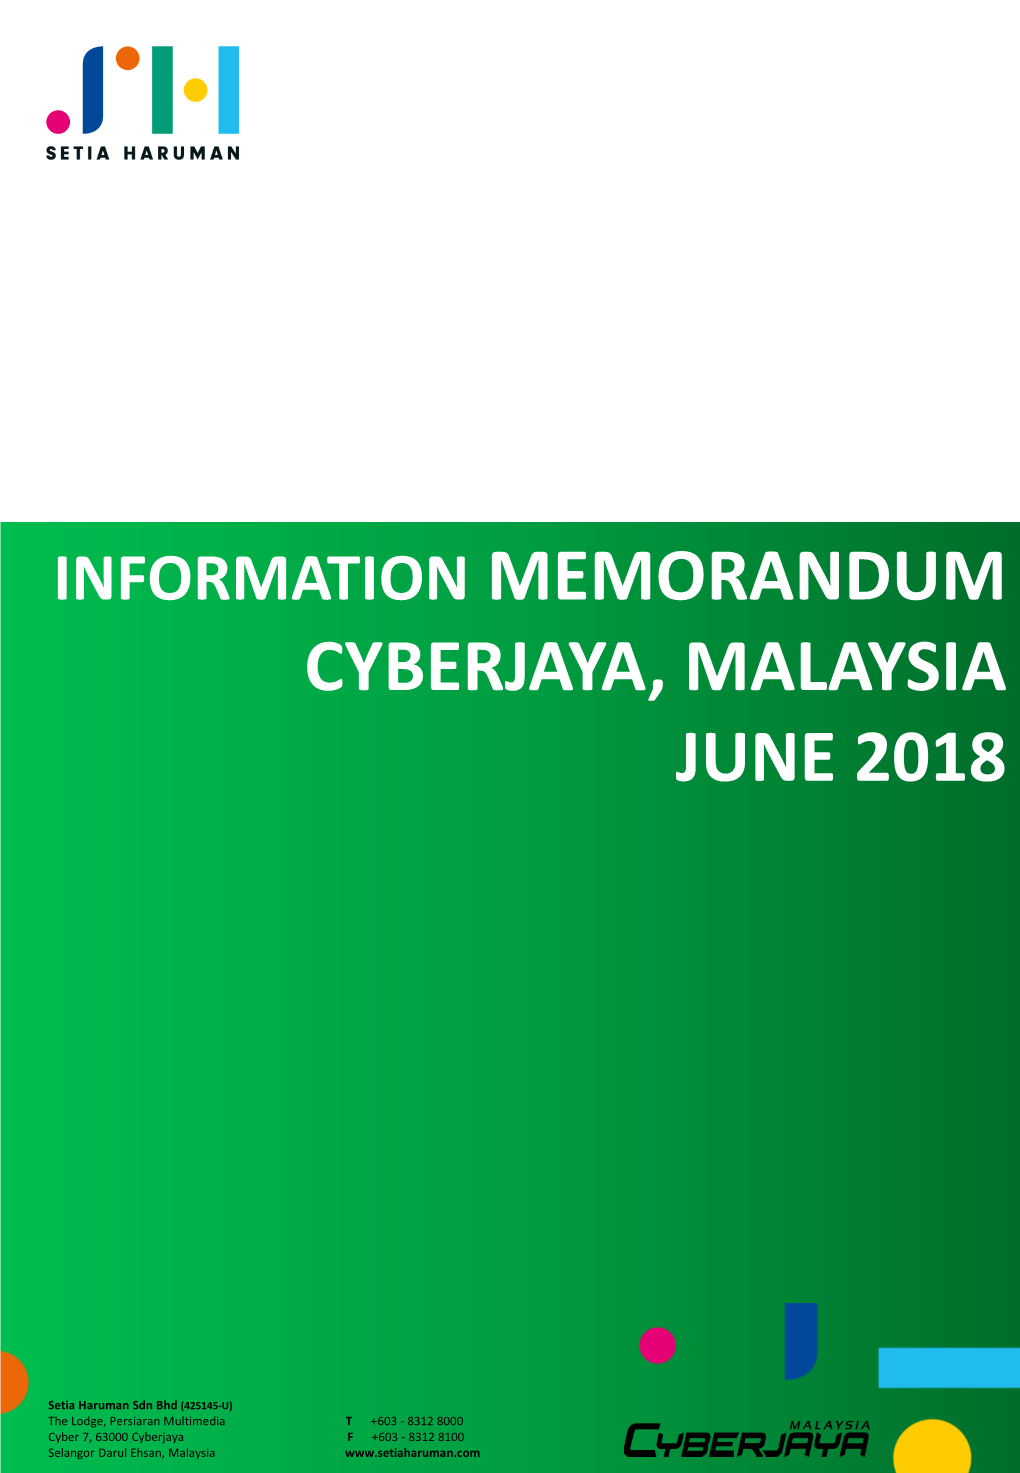 Cyberjaya, Malaysia June 2018